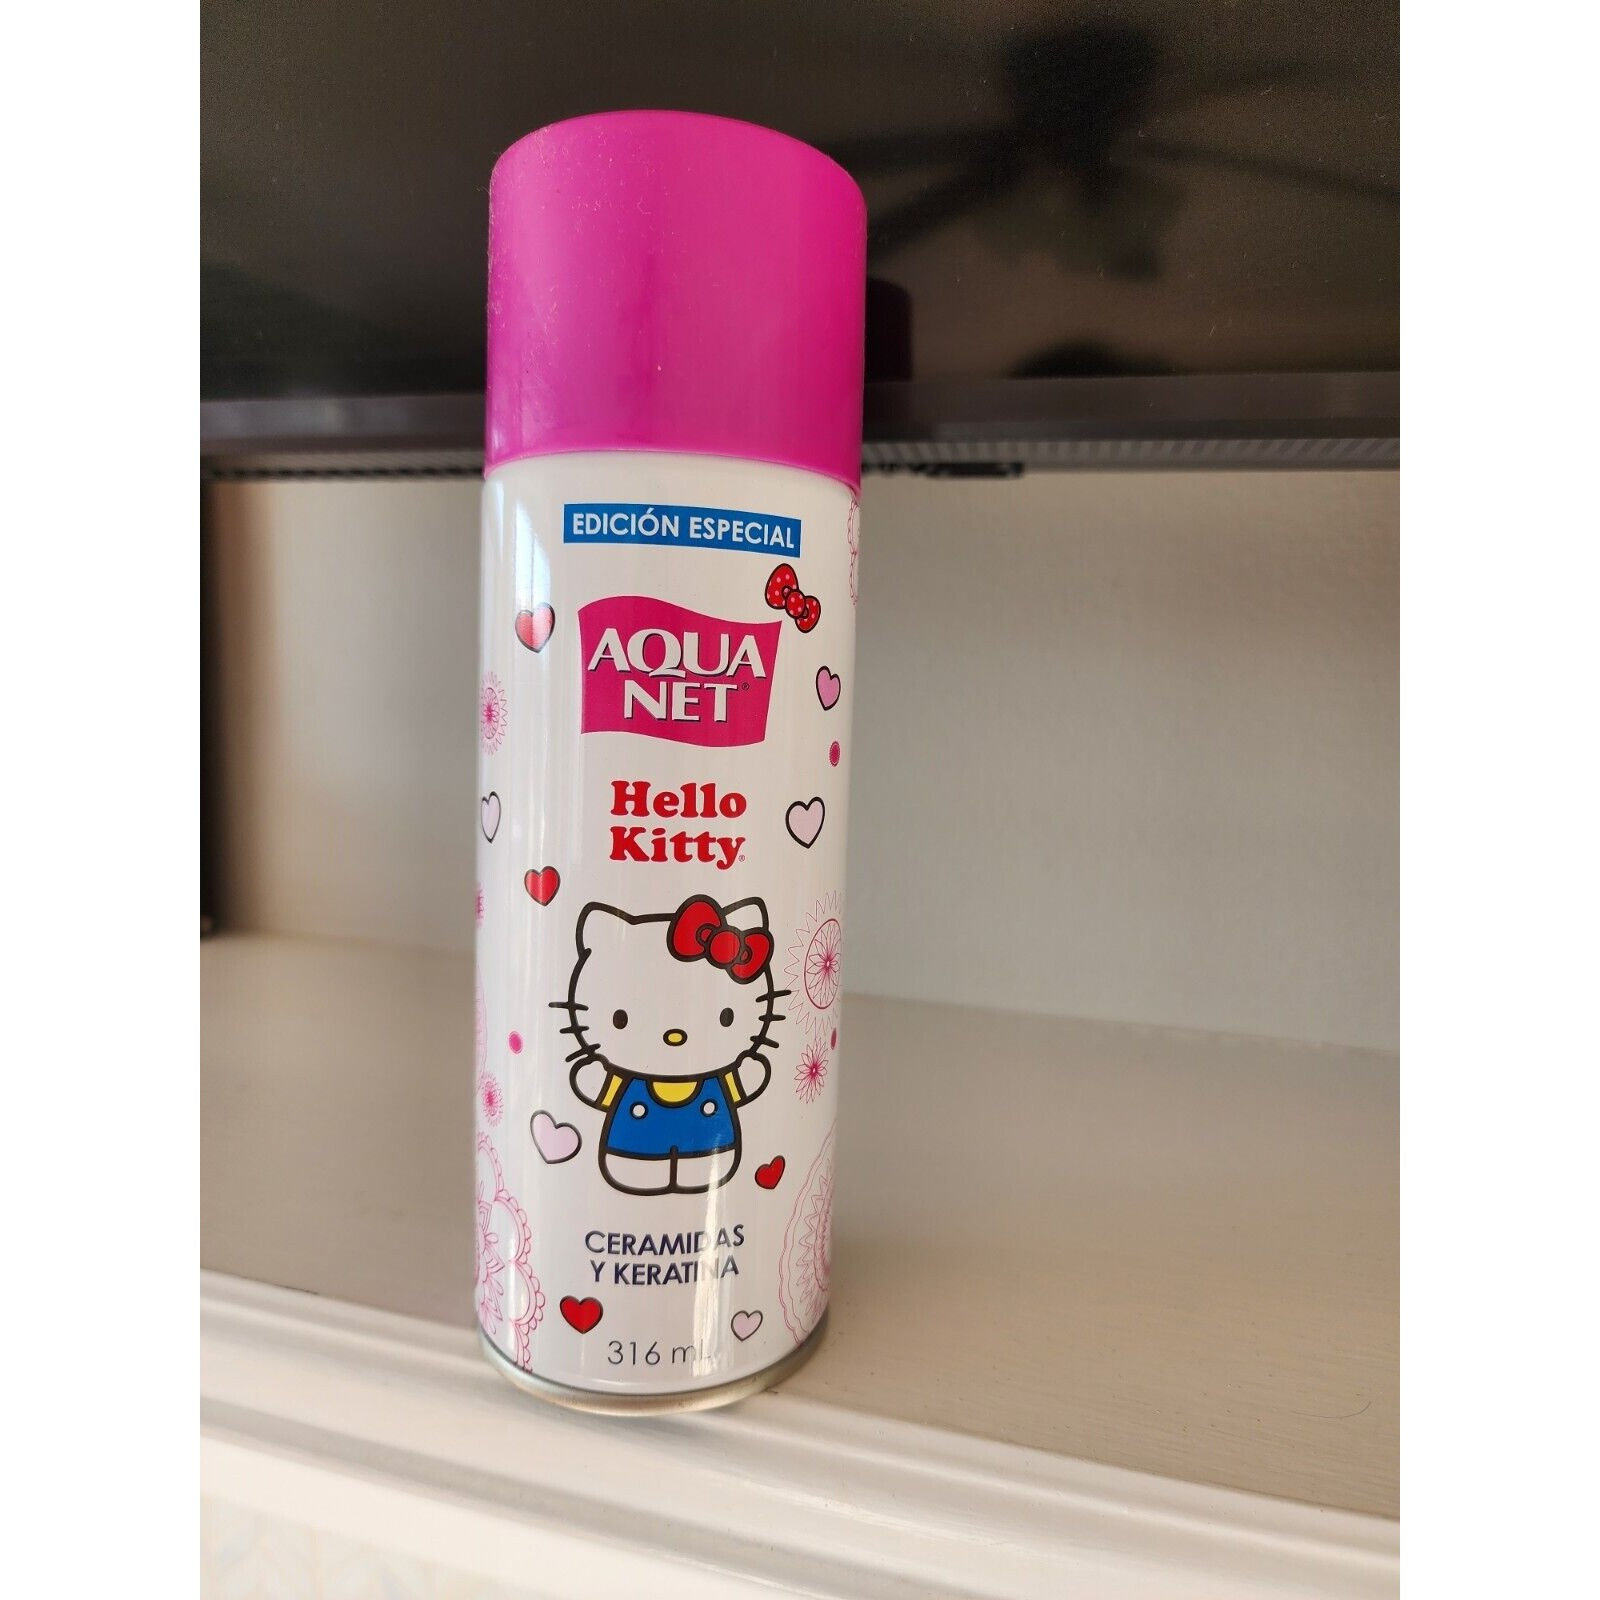 Hello Kitty Aqua Net Hair Spray CERAMIDAS Y KERATINA 316 Ml